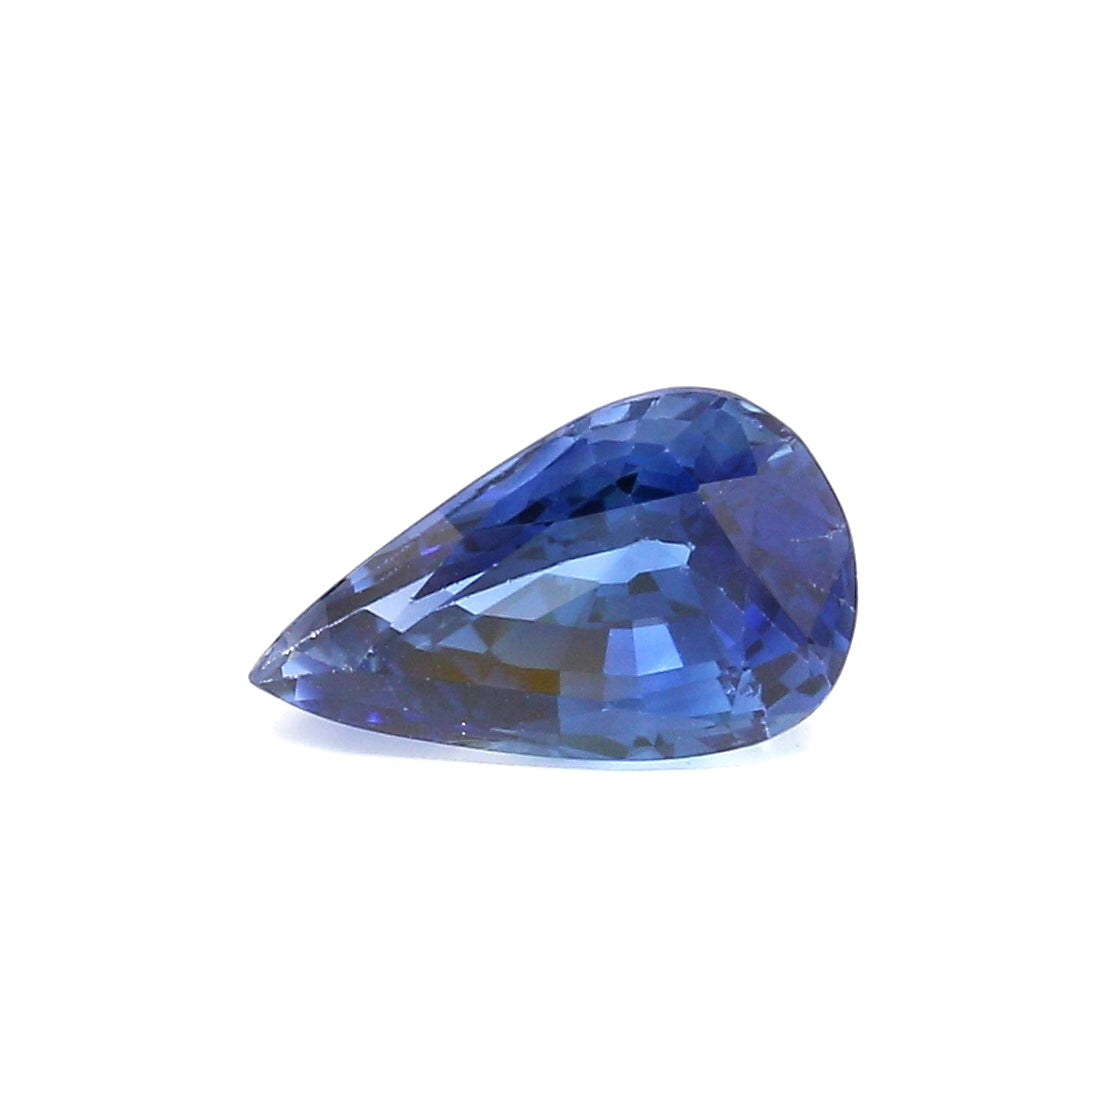 1.95ct Pear Shape Sapphire, Heated, Sri Lanka - 9.74 x 5.97 x 4.84mm